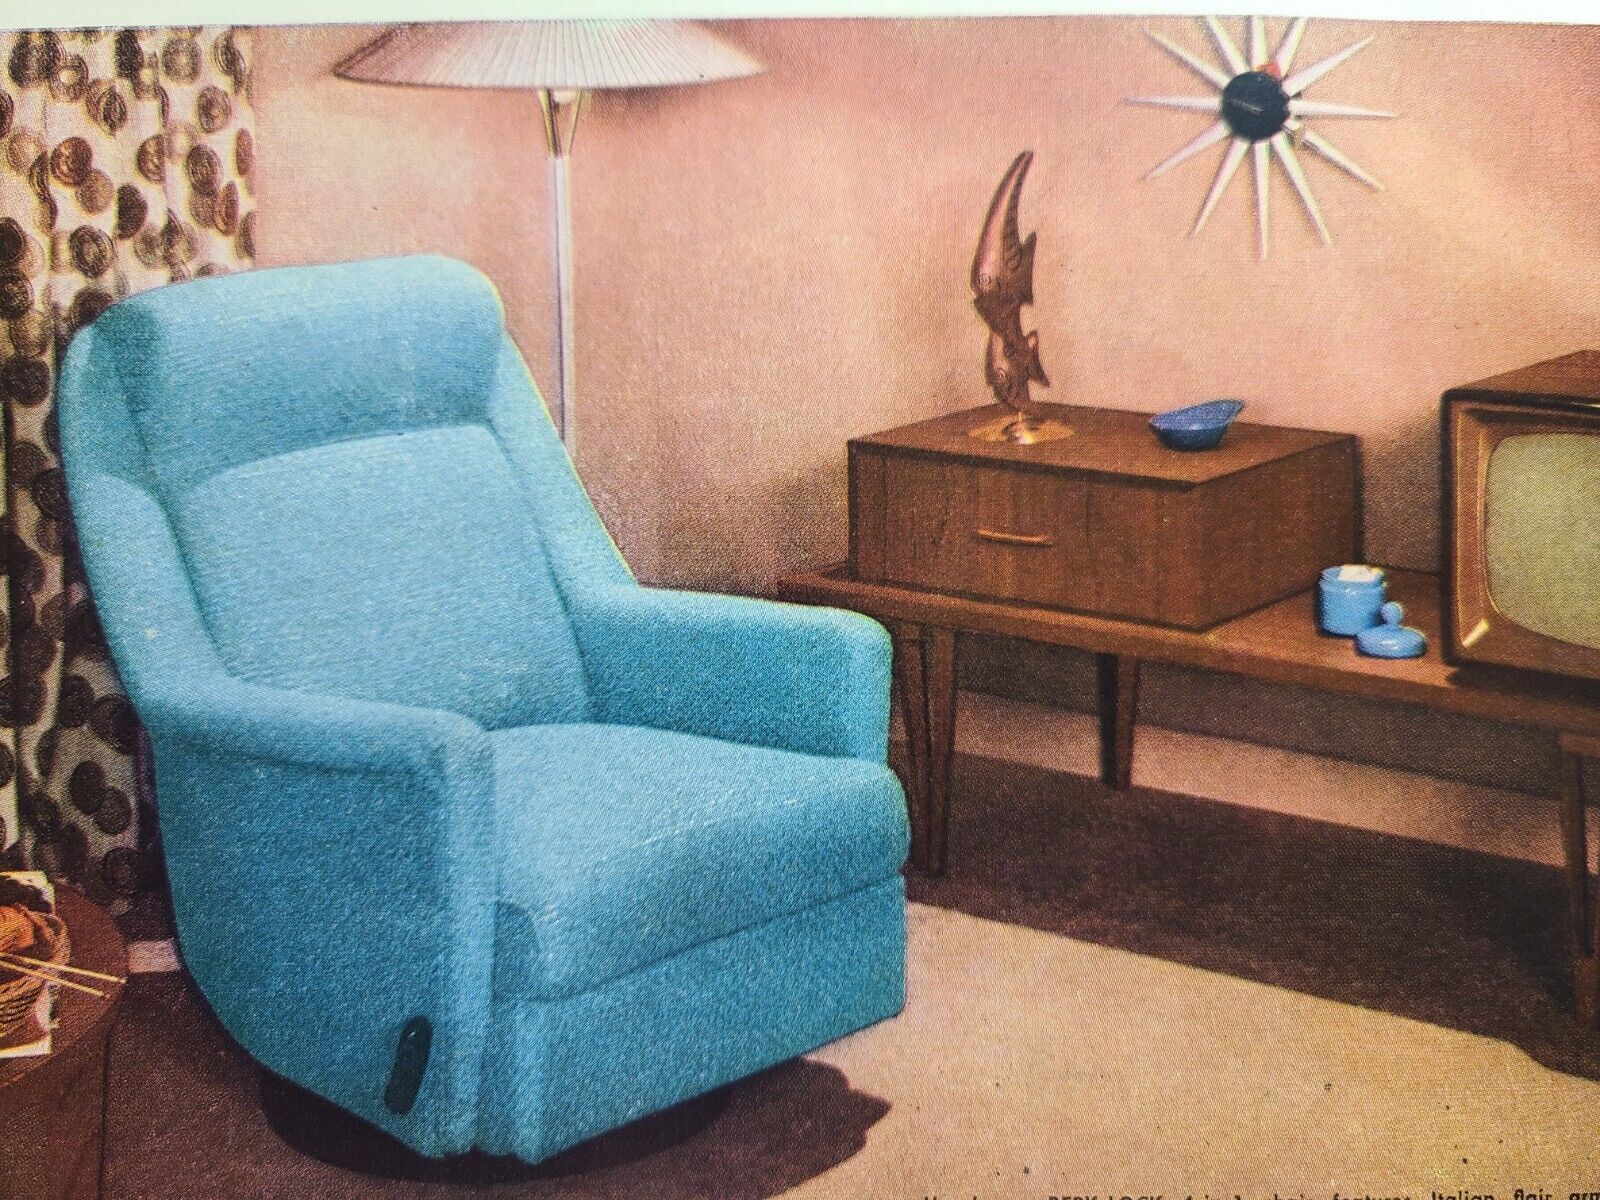 Vintage Print Ad 1956 Berkine Berk-Lock 4-in-1 Chair Lounge Recline Swivel Rock